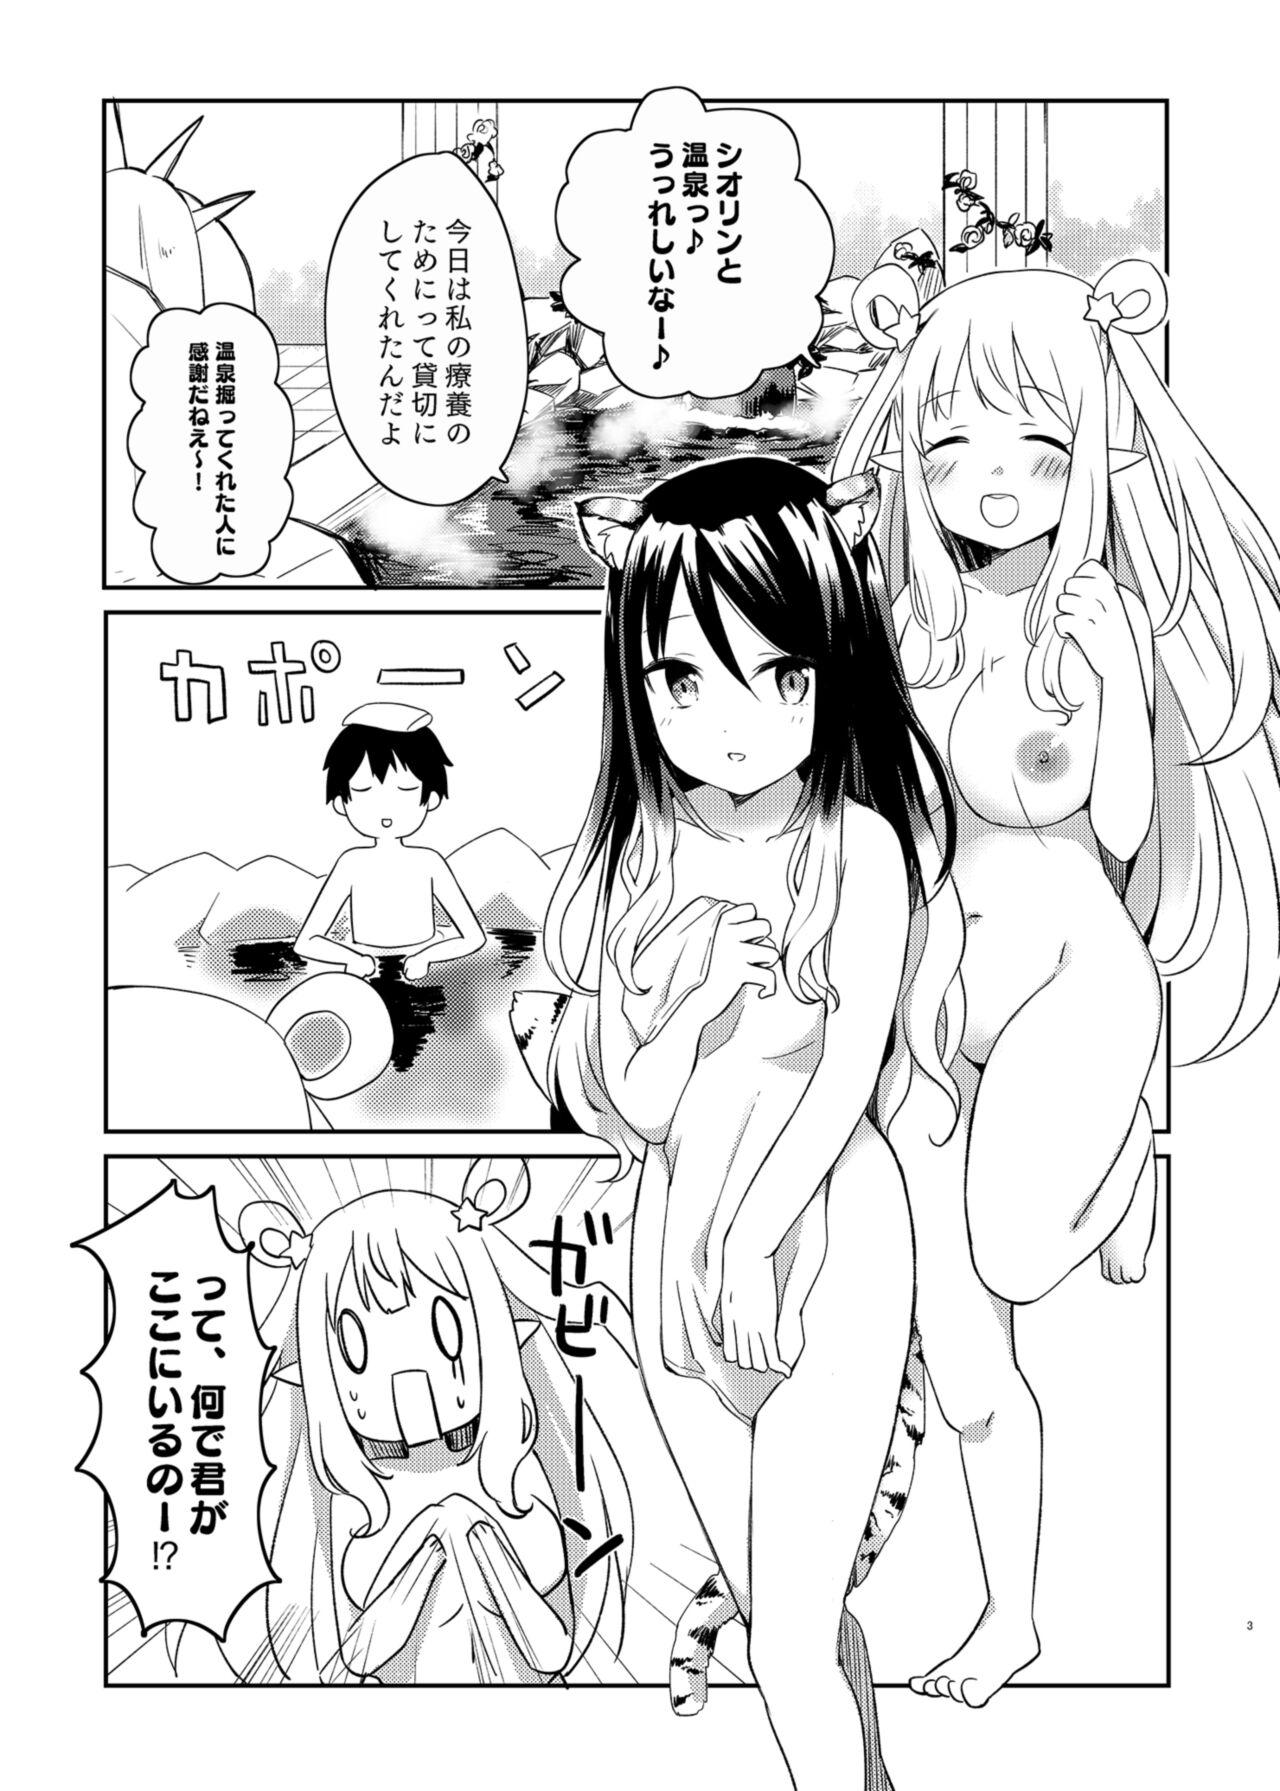 Oldman Hatsune to Shiori no Yukemuri Daisakusen - Princess connect Sextape - Page 3